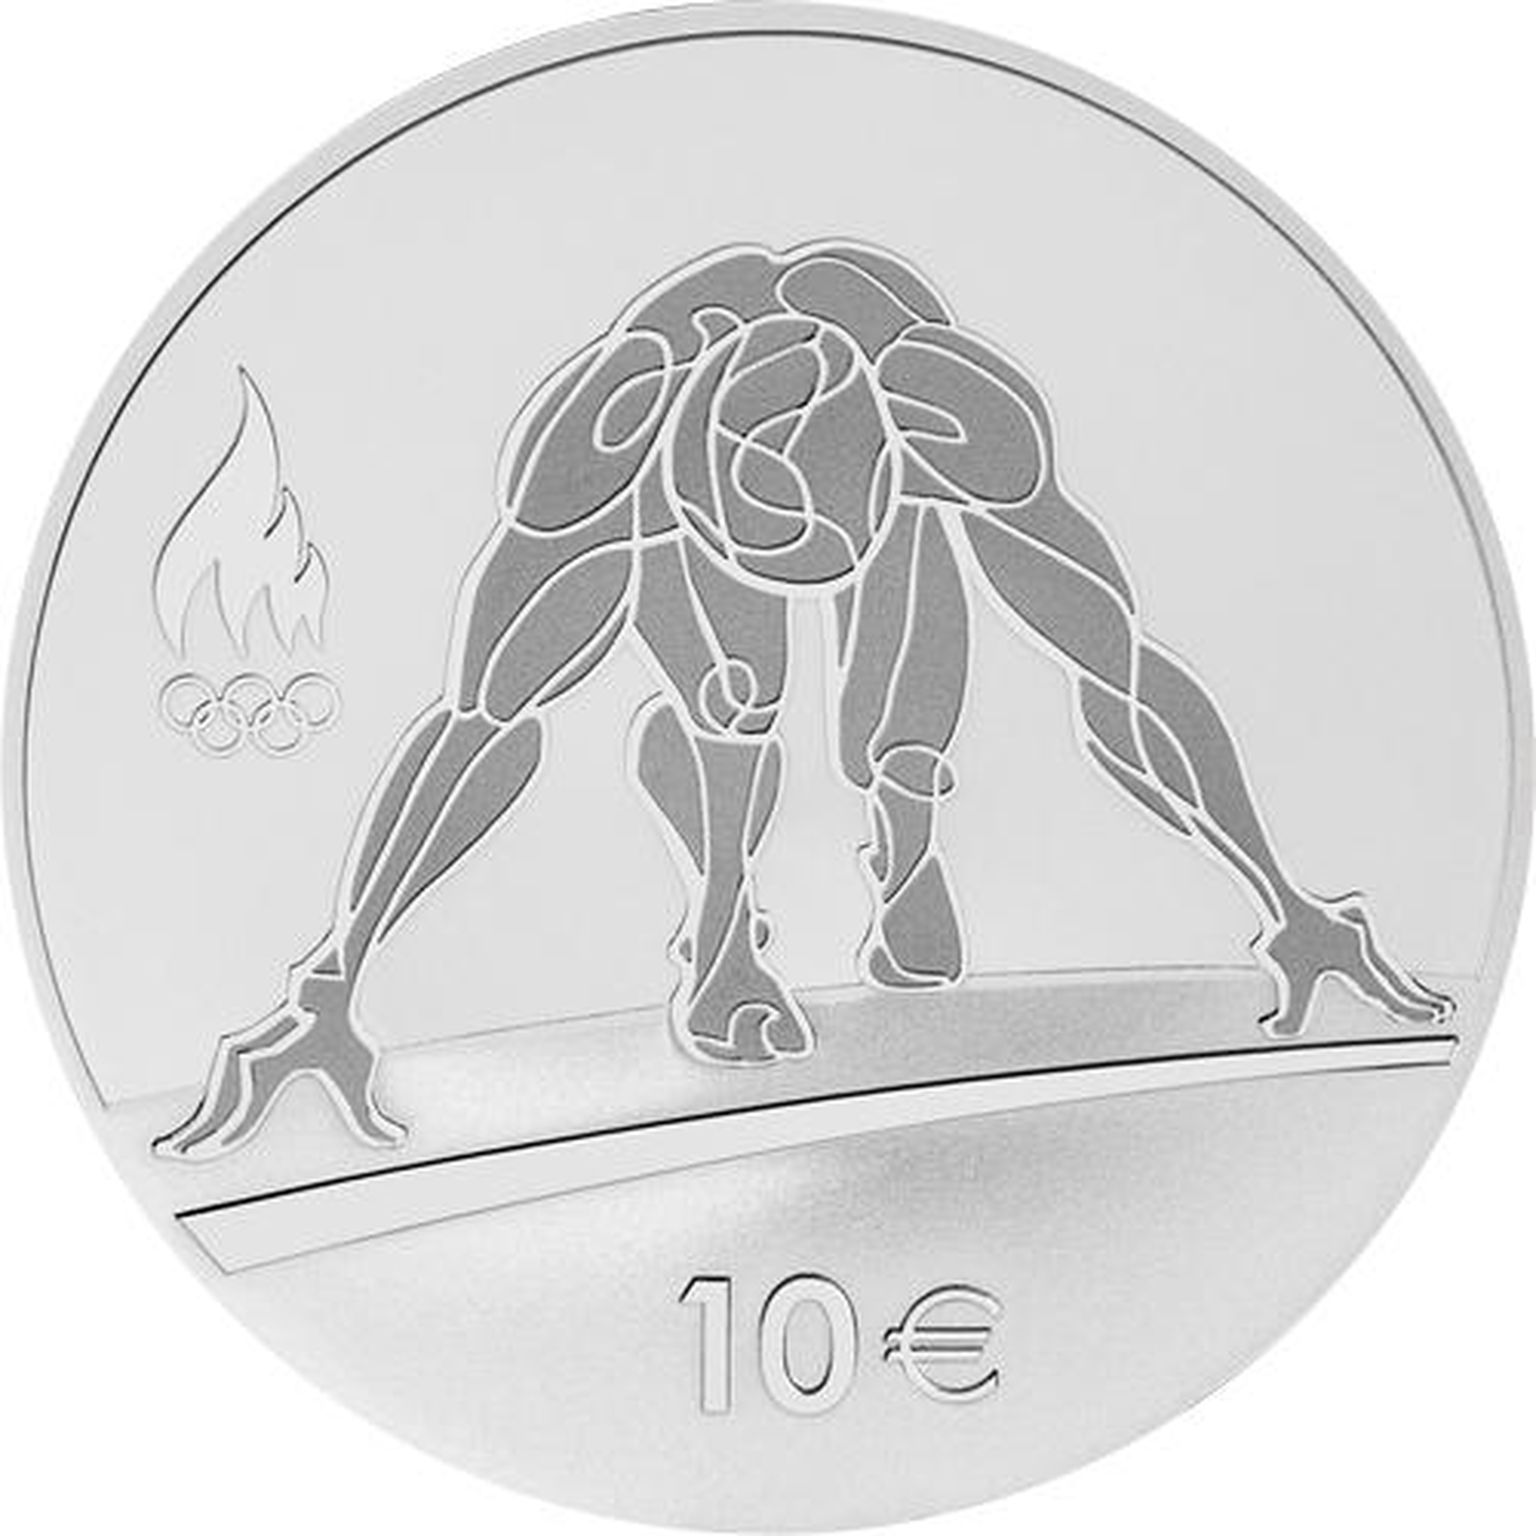 Rio de Janeiro suveolümpiamängudele pühendatud meenemünt emiteeriti 2016. aastal.